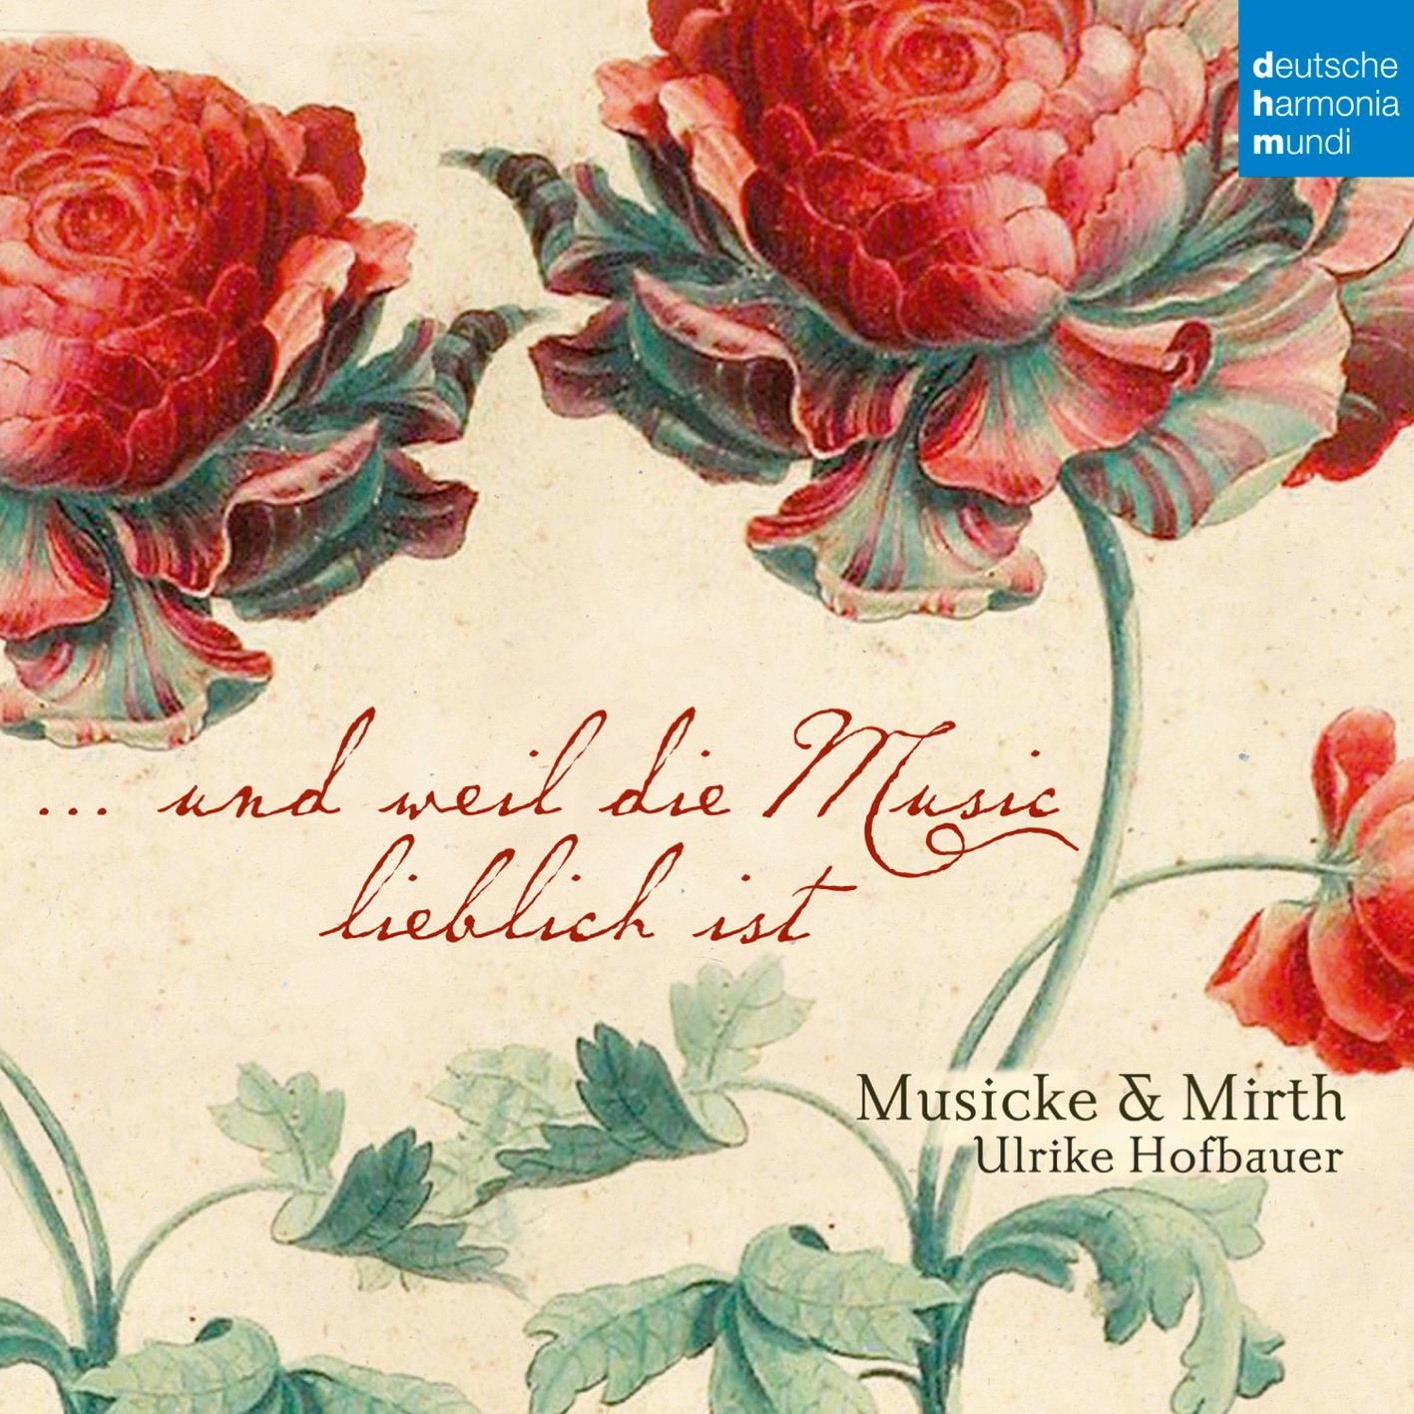 Musicke & Mirth – Balthasar Fritsch: …und weil die Music lieblich ist (2017) [Qobuz FLAC 24bit/96kHz]